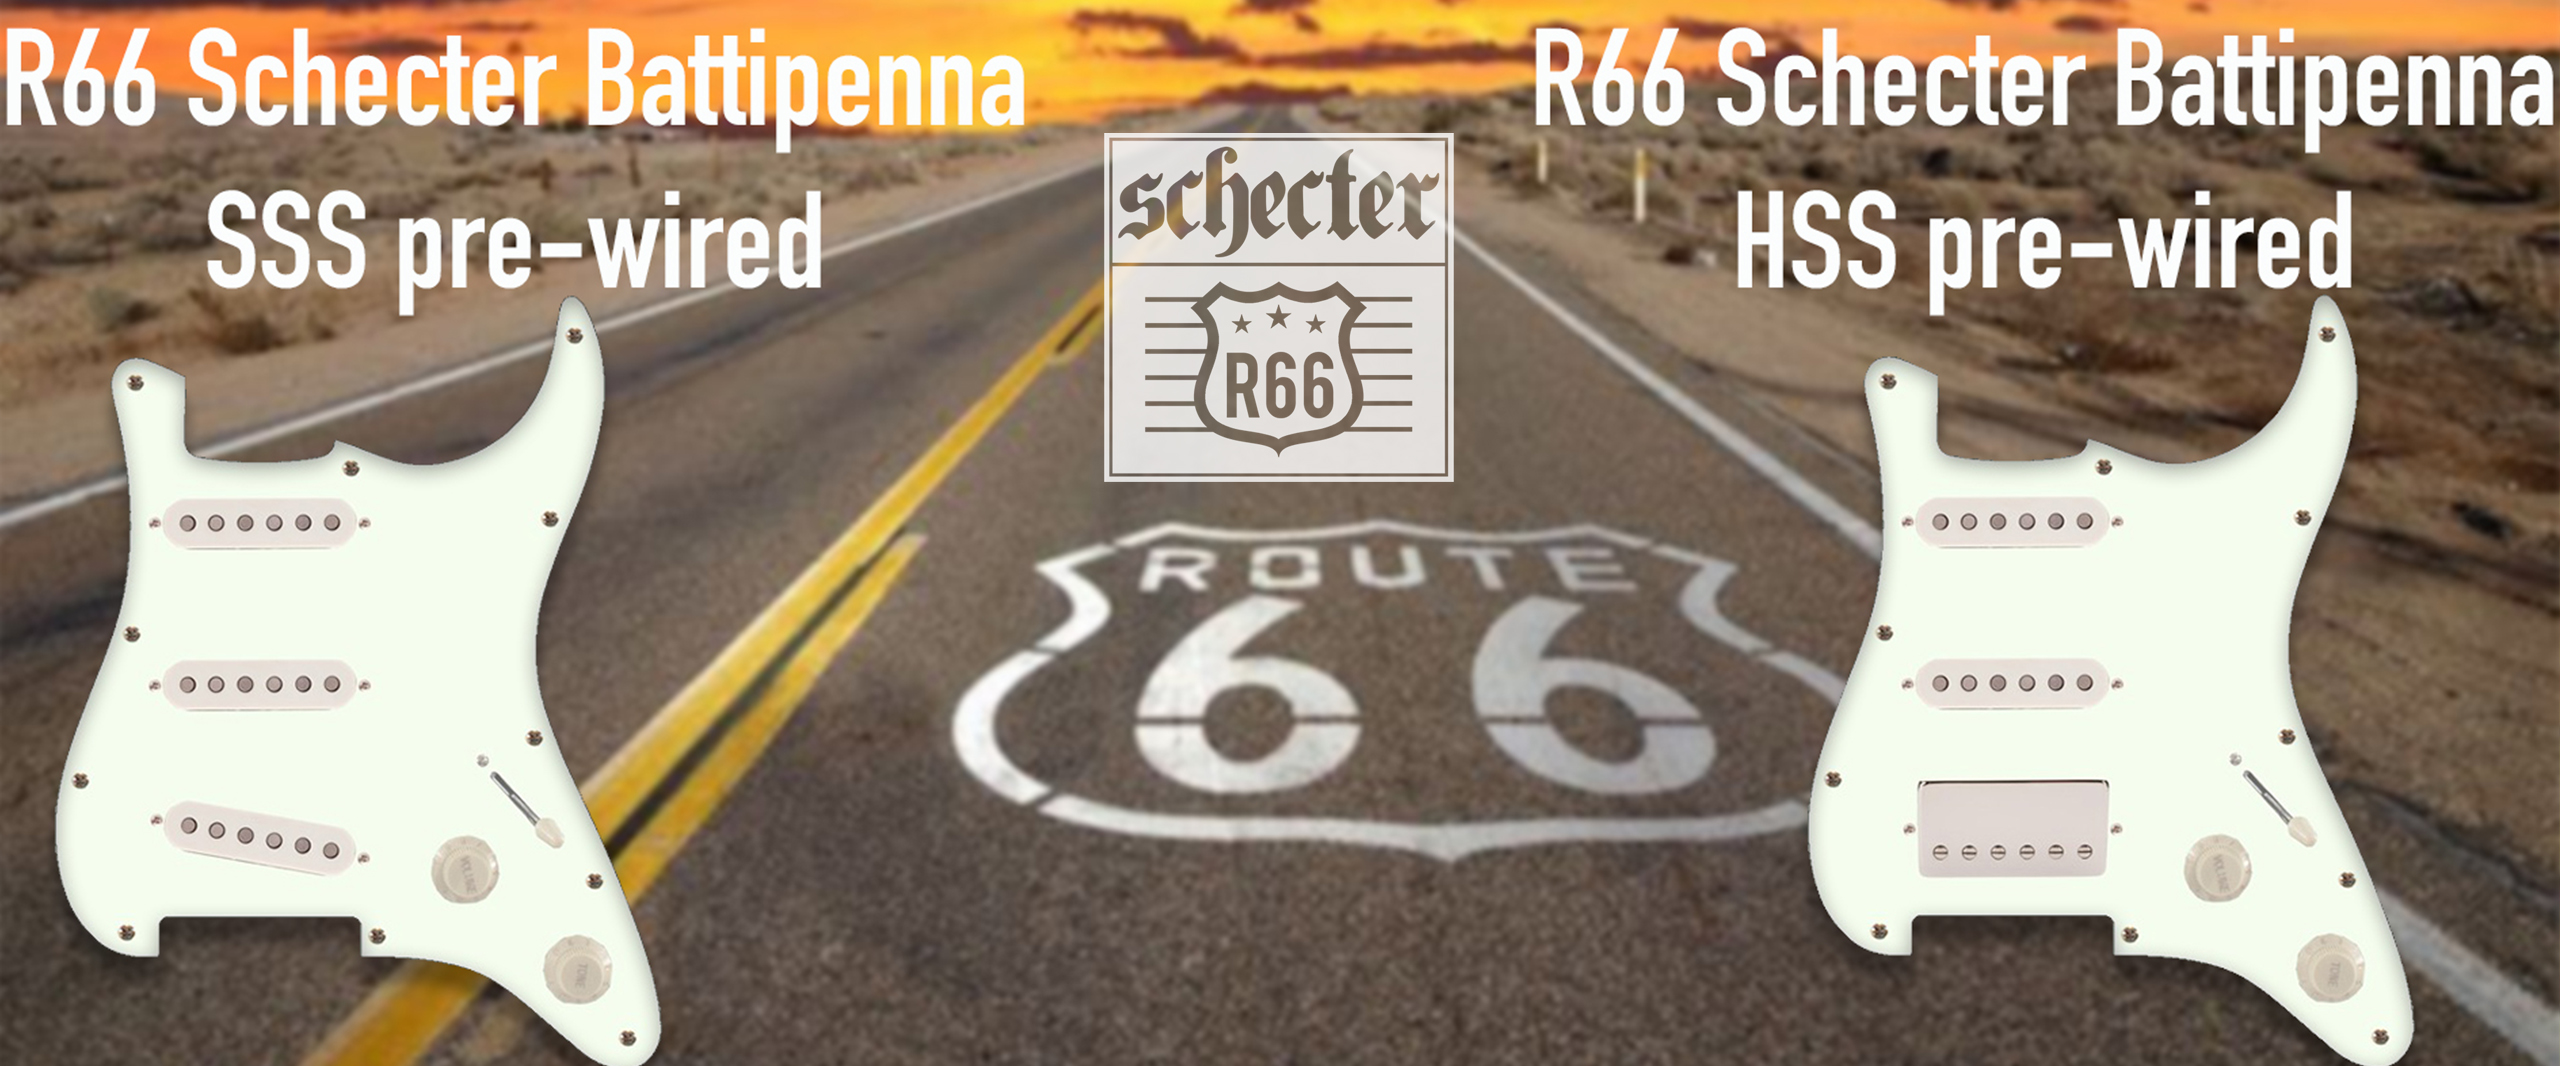 SCHECTER-R66-SITO